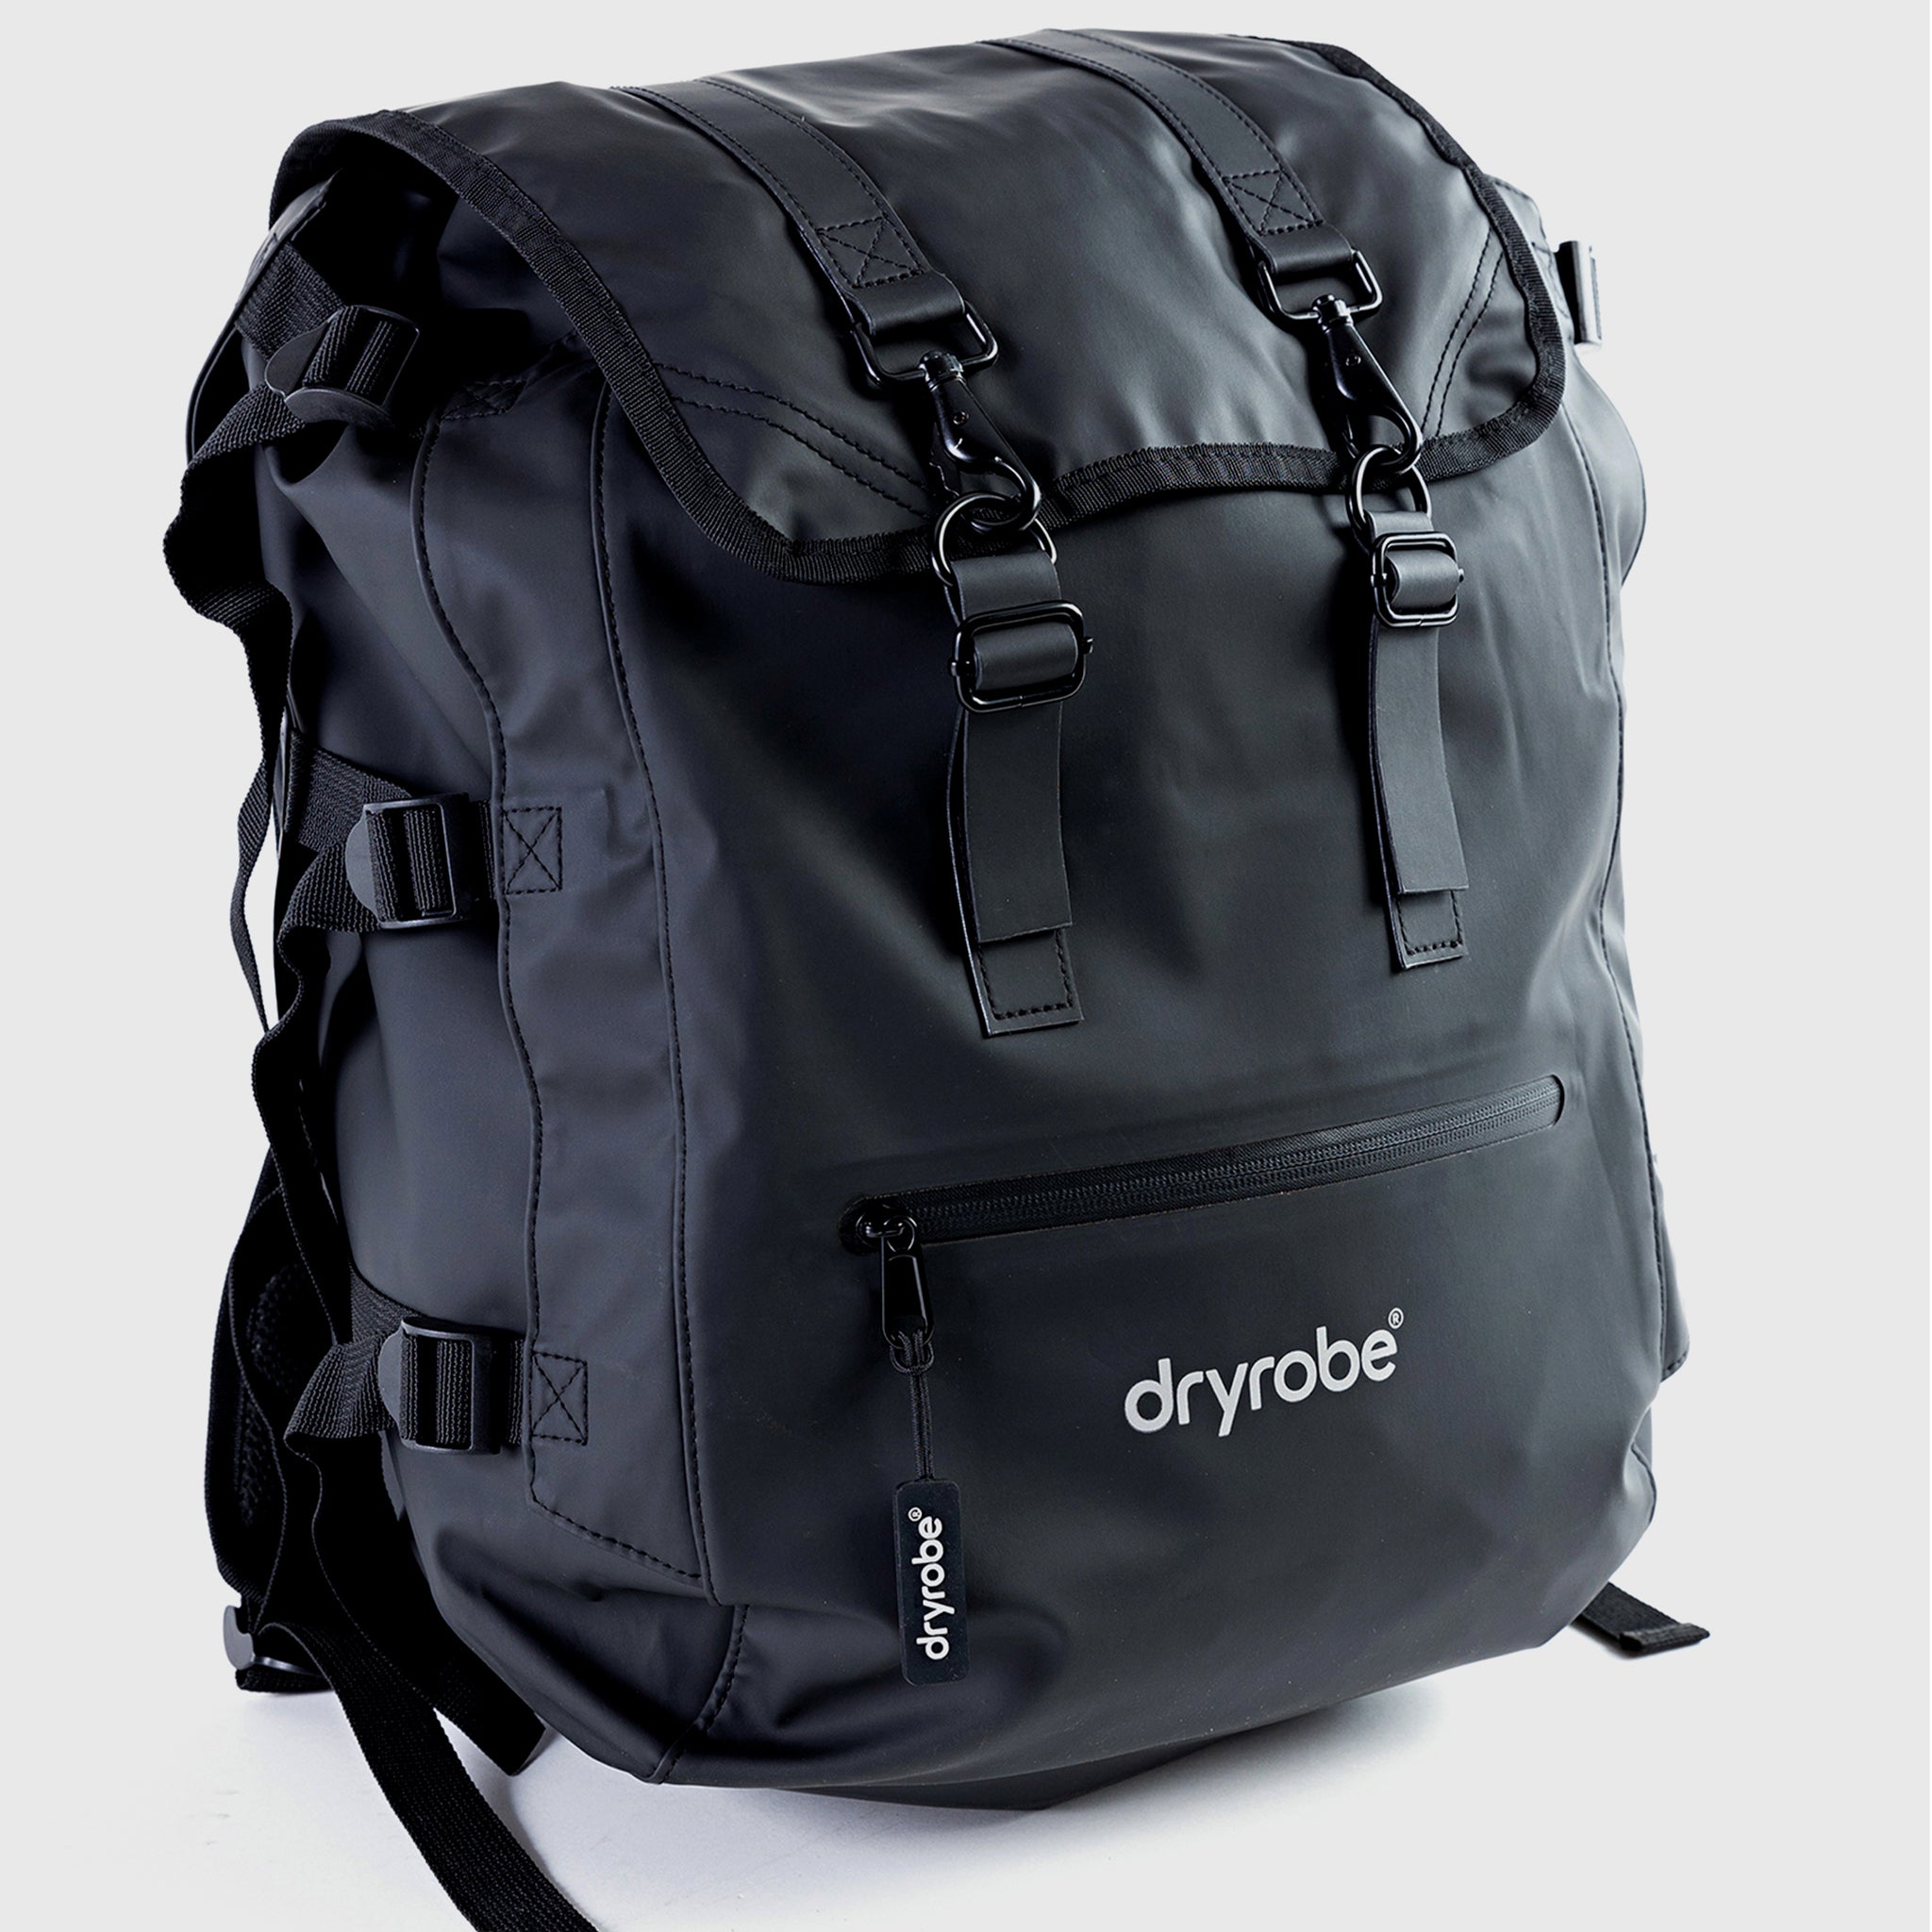 dryrobe Eco Compression Backpack Bag